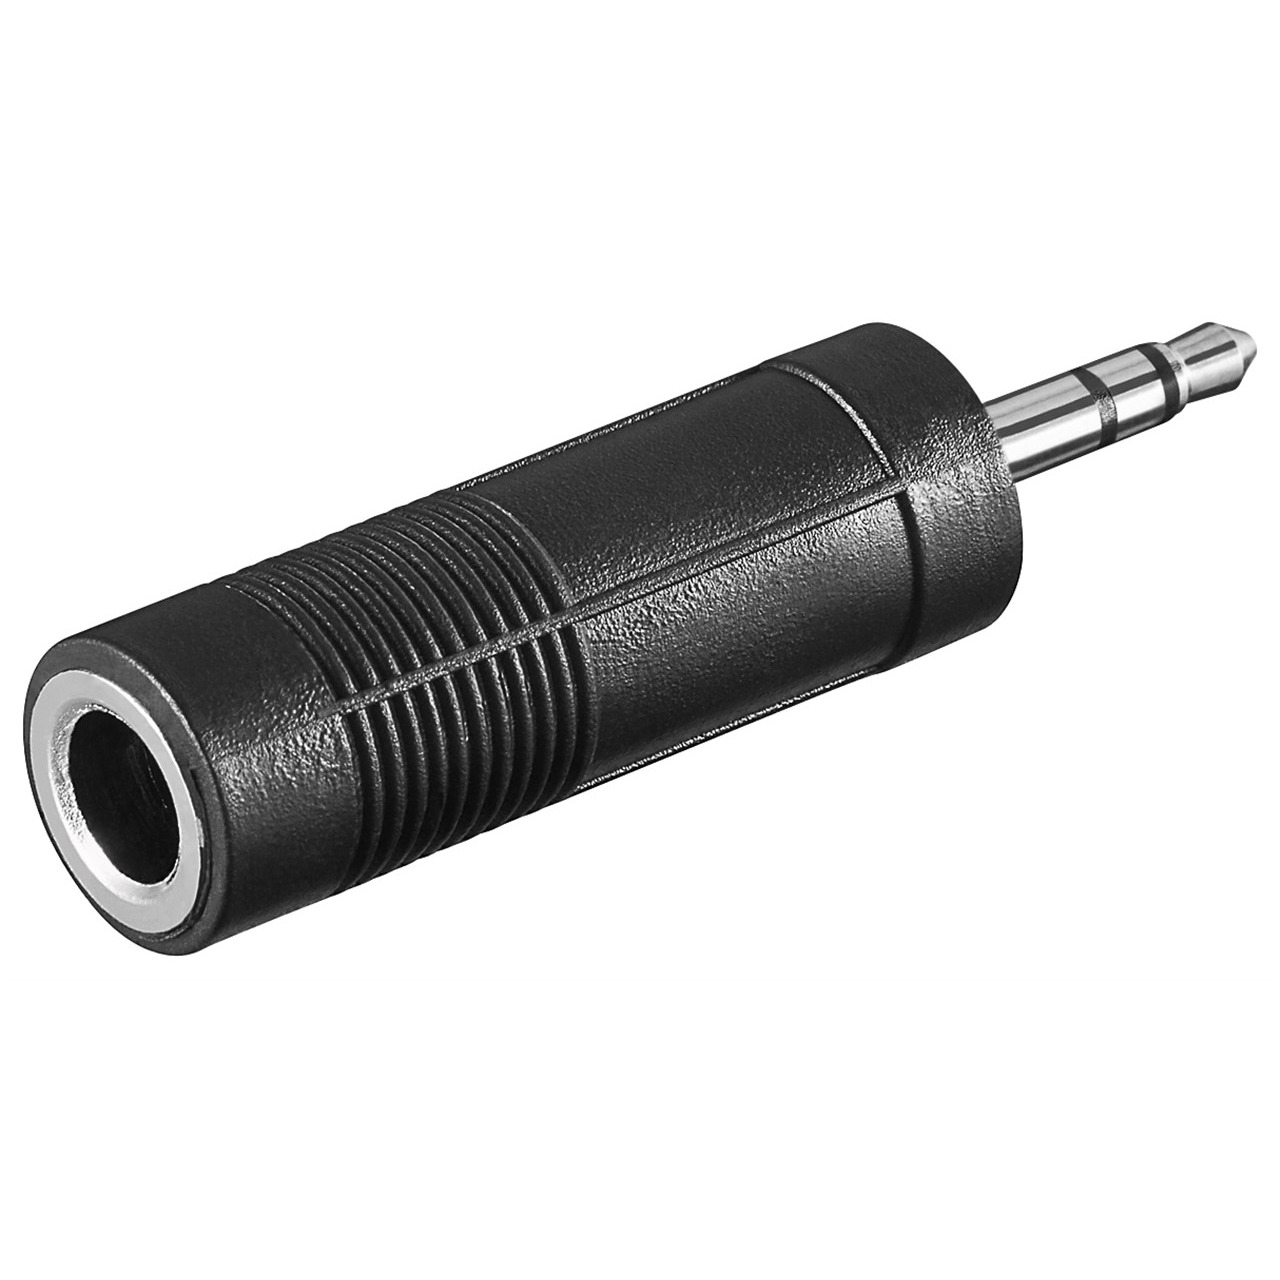 Klinkenstecker-Adapter von 6-3 mm auf 3-5 mm